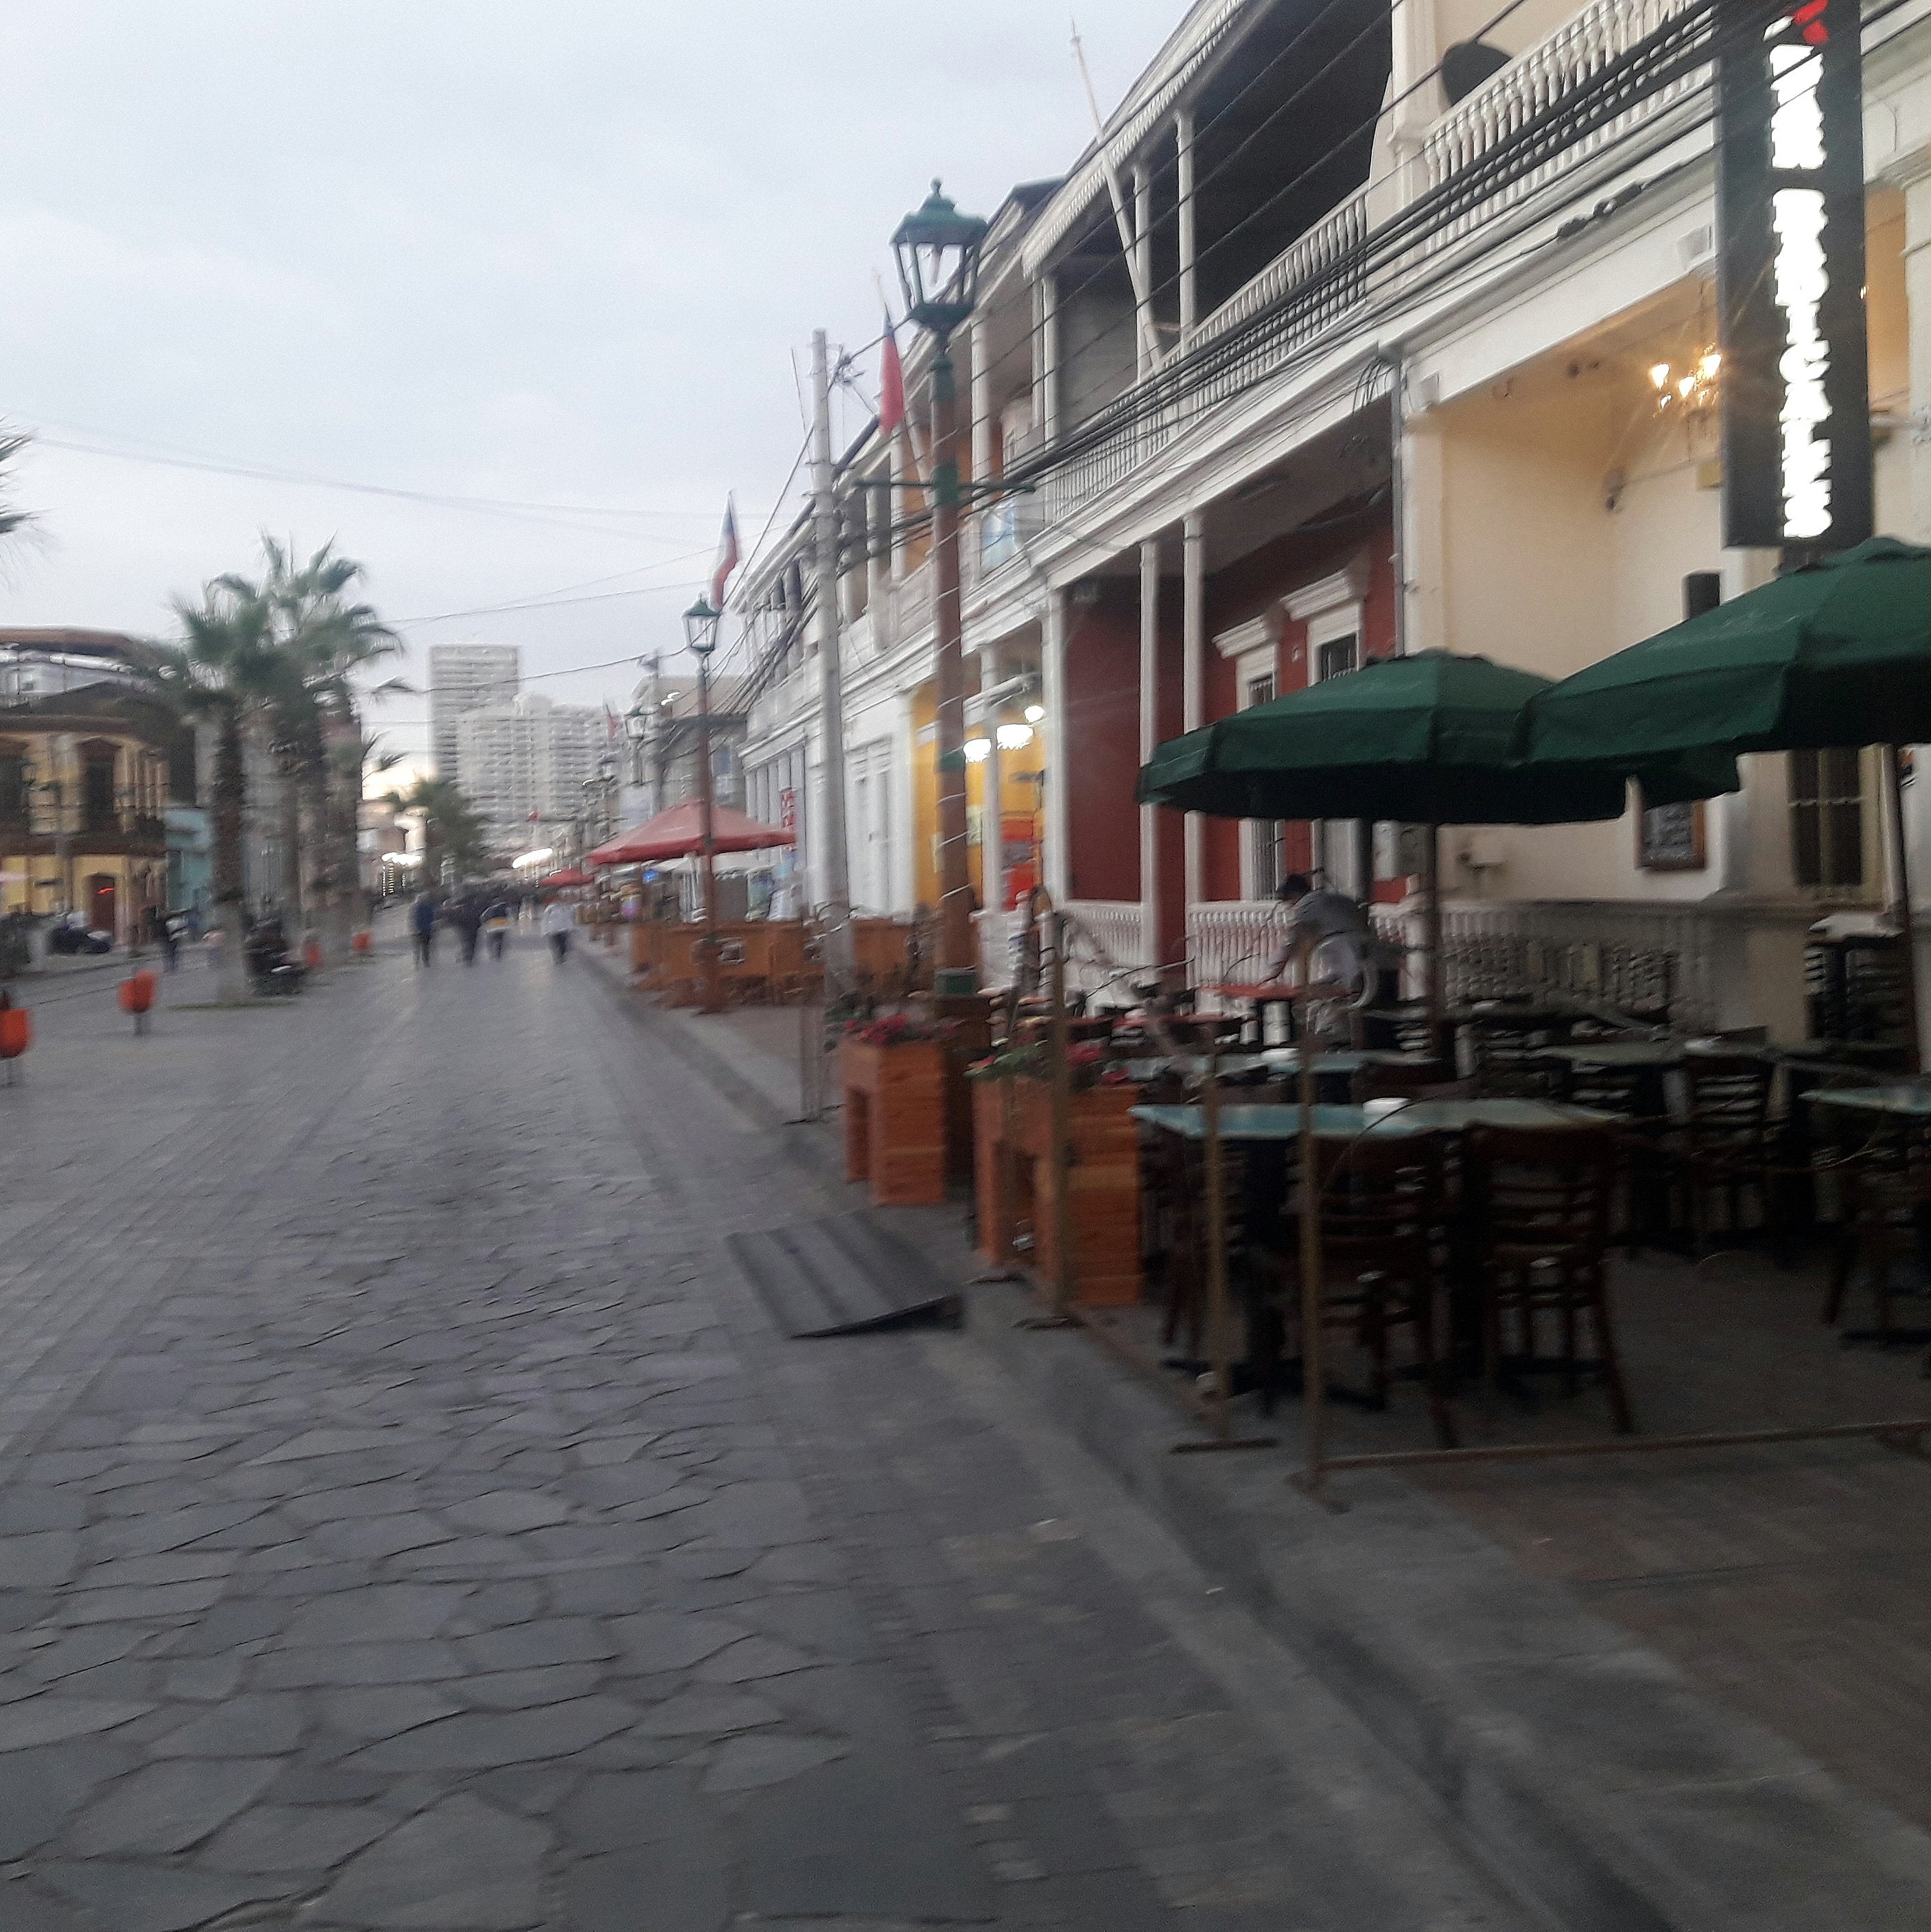 paseo peatonal con circulación sobre la calzada, la vereda es ocupada por mesas de un restaurant